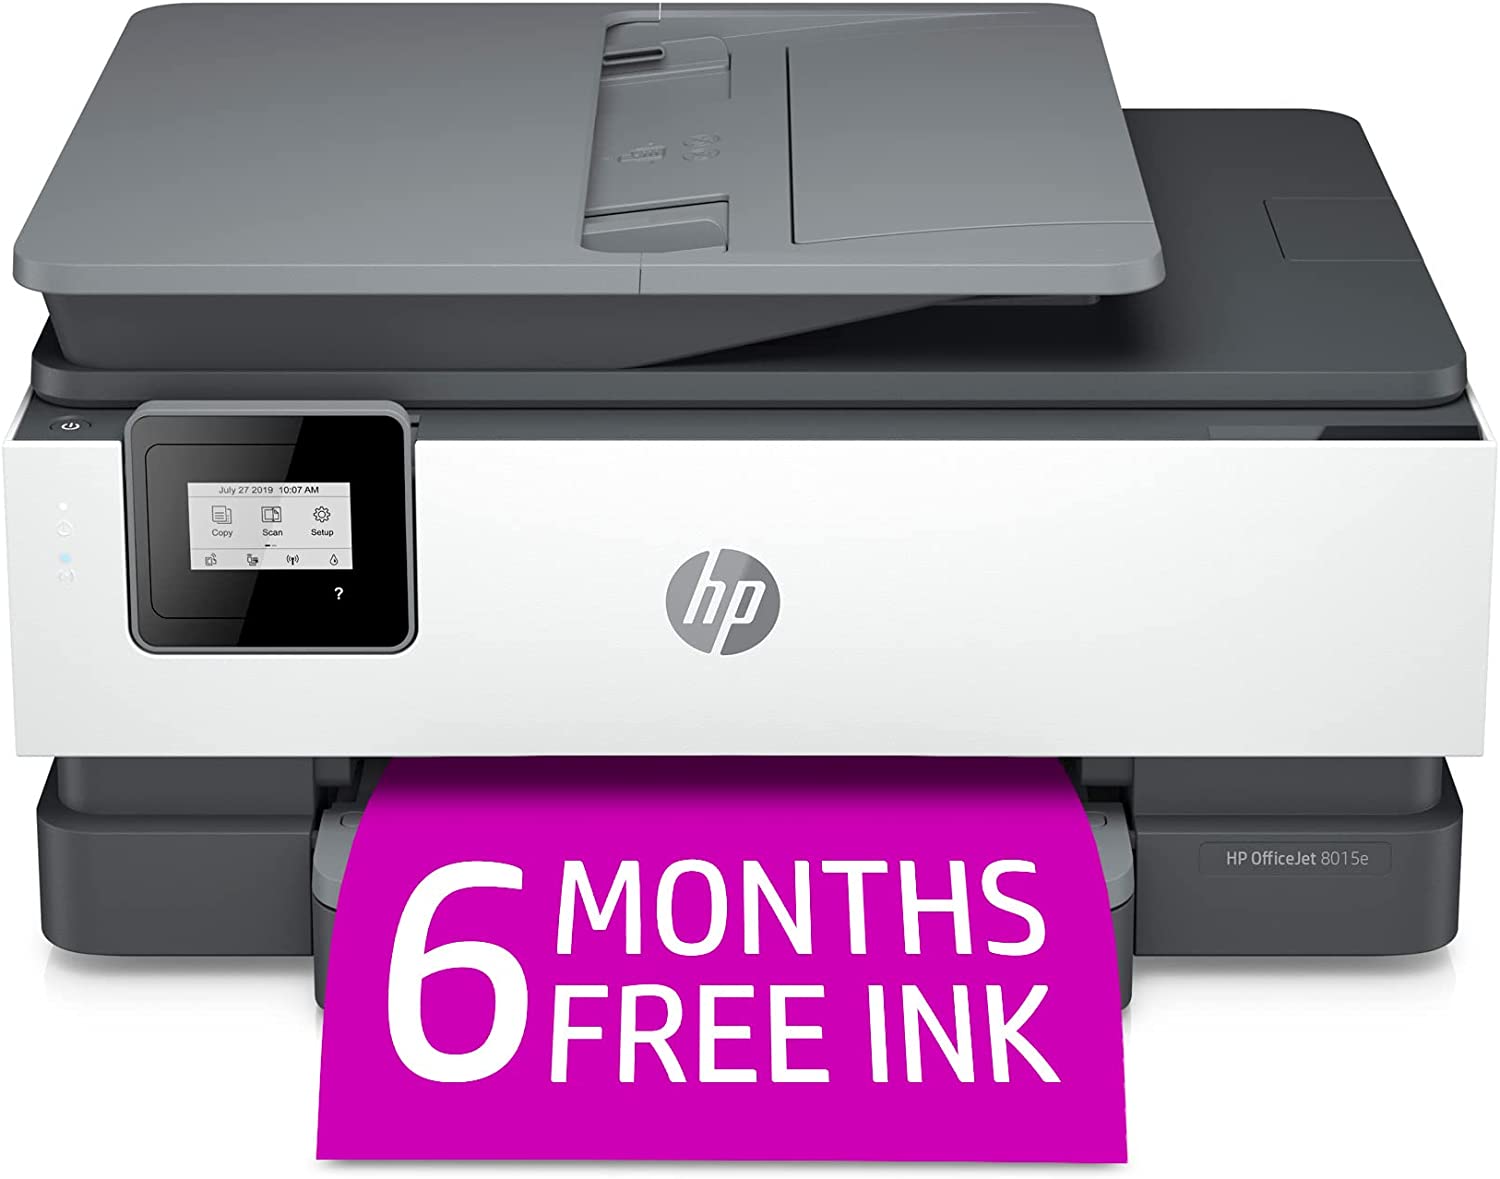 HP+(228F5A)를 포함한 6개월 무료 잉크가 포함된 HP OfficeJet 8015e 무선 컬러 올인원 프린터, 흰색